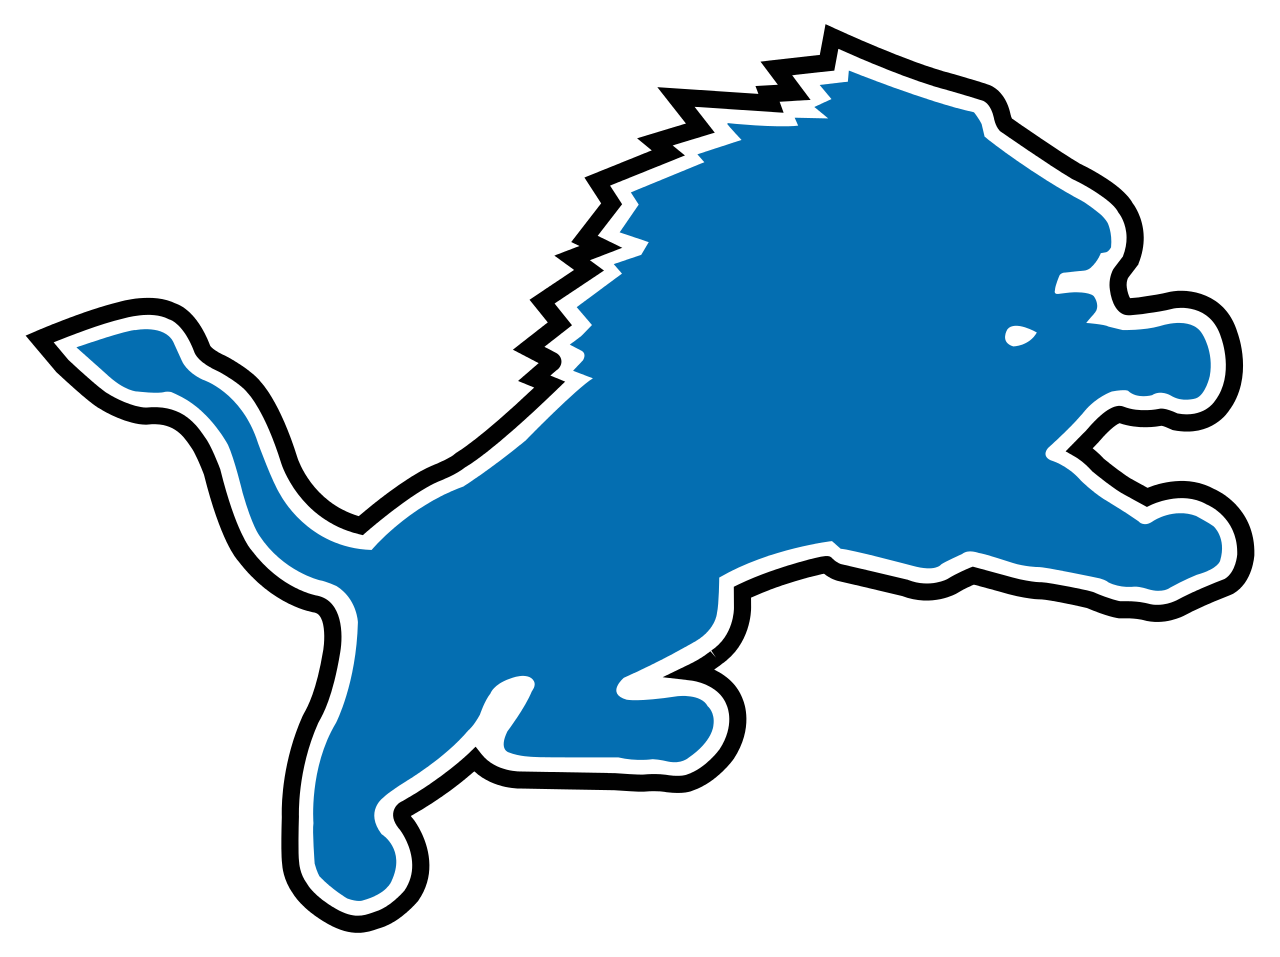 File:Detroit Lions logo.svg